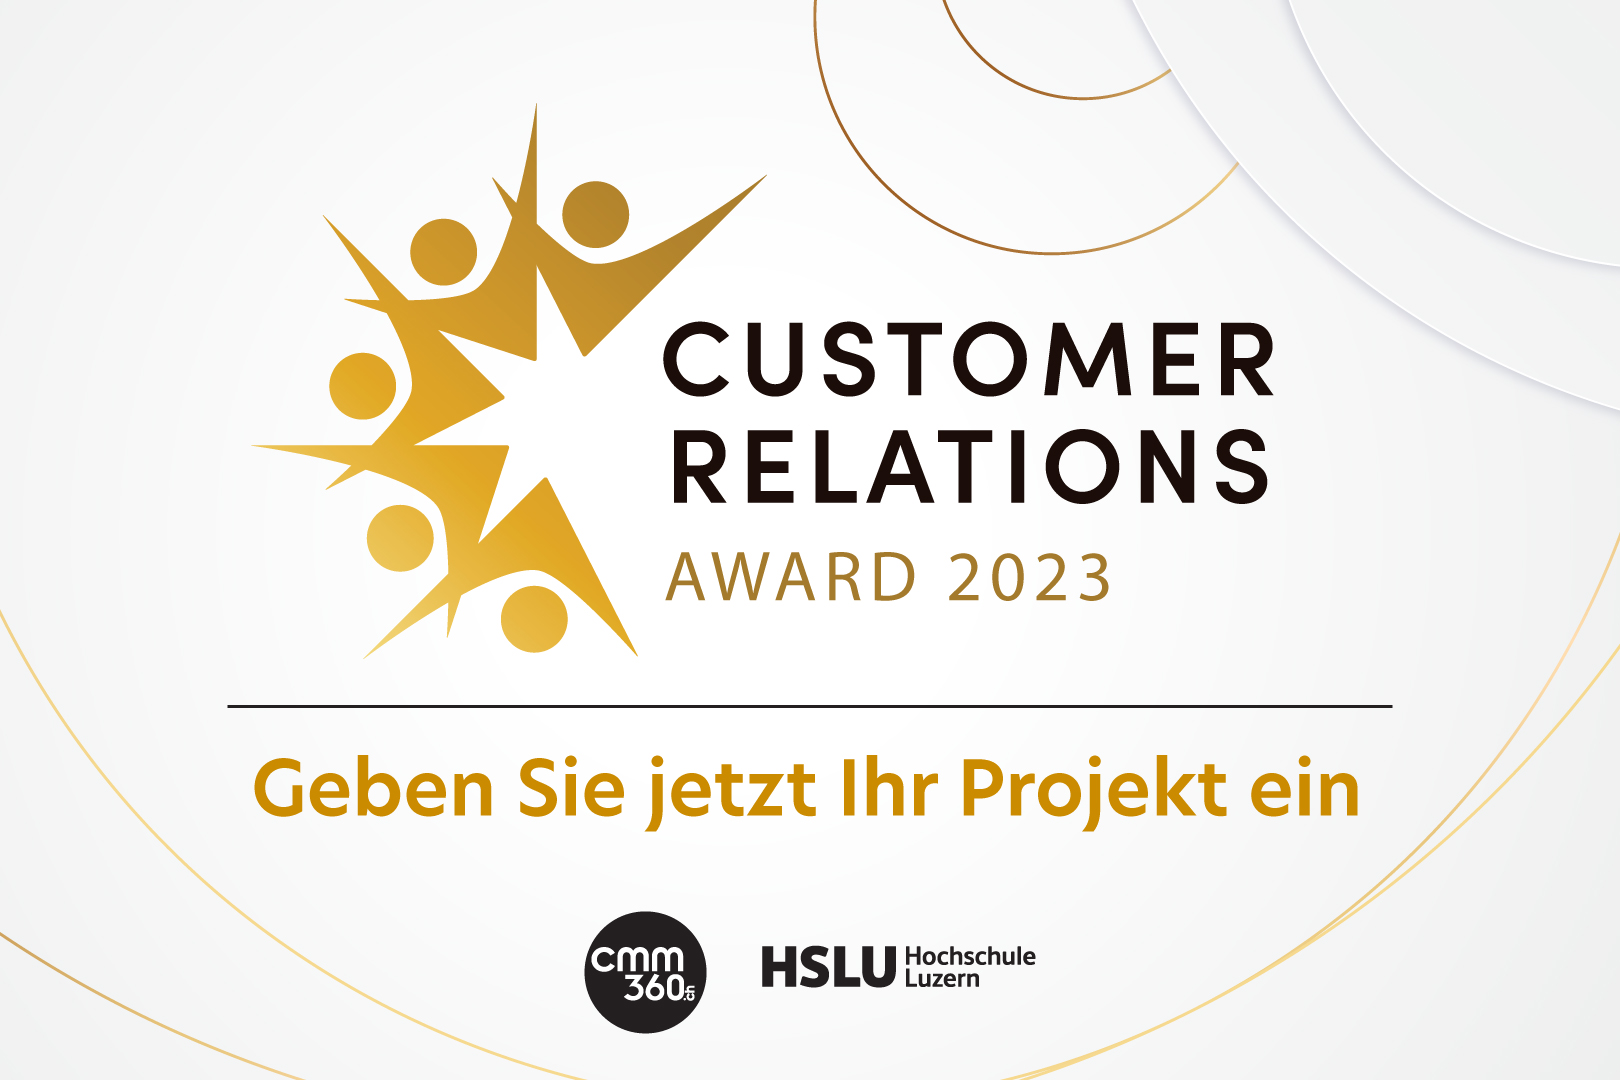 Customer Relations Award 2023_Neue Projekte, neue Chancen und neue Kategorien_Projekteingabe_cmm360